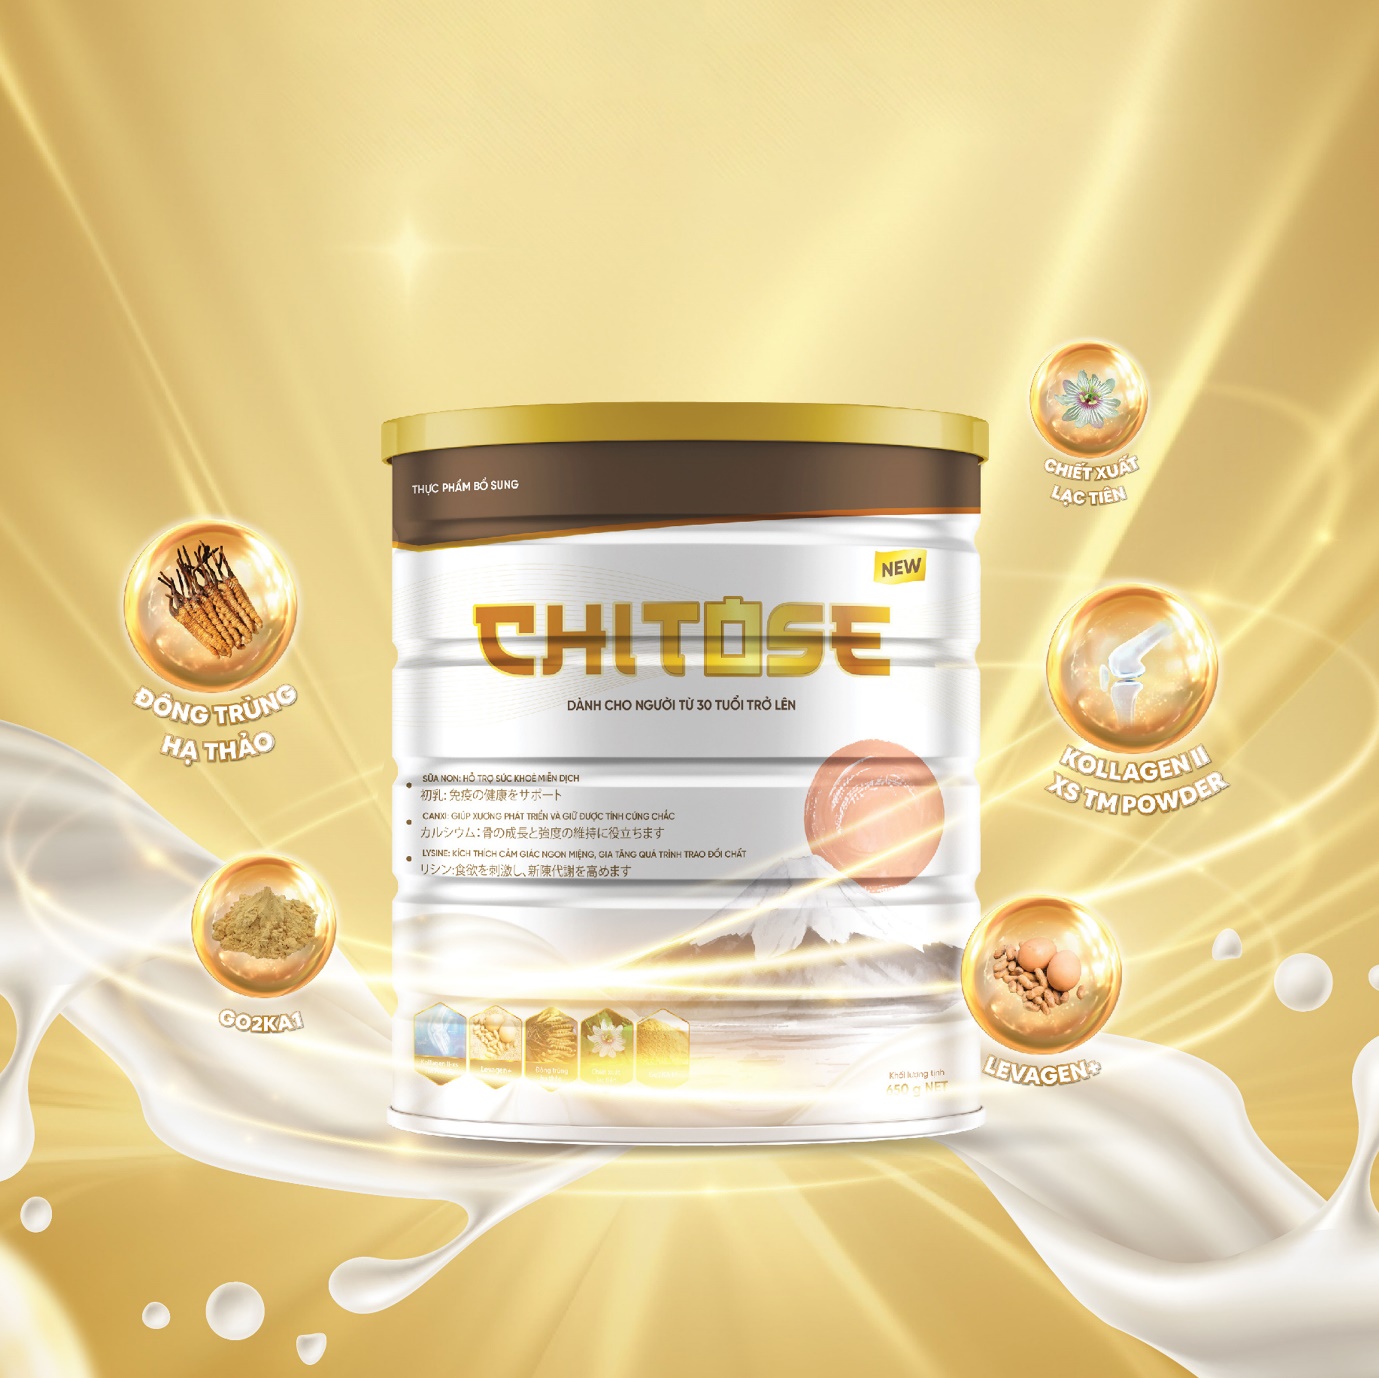 Chitose - Giải pháp dinh dưỡng toàn diện cho sức khỏe